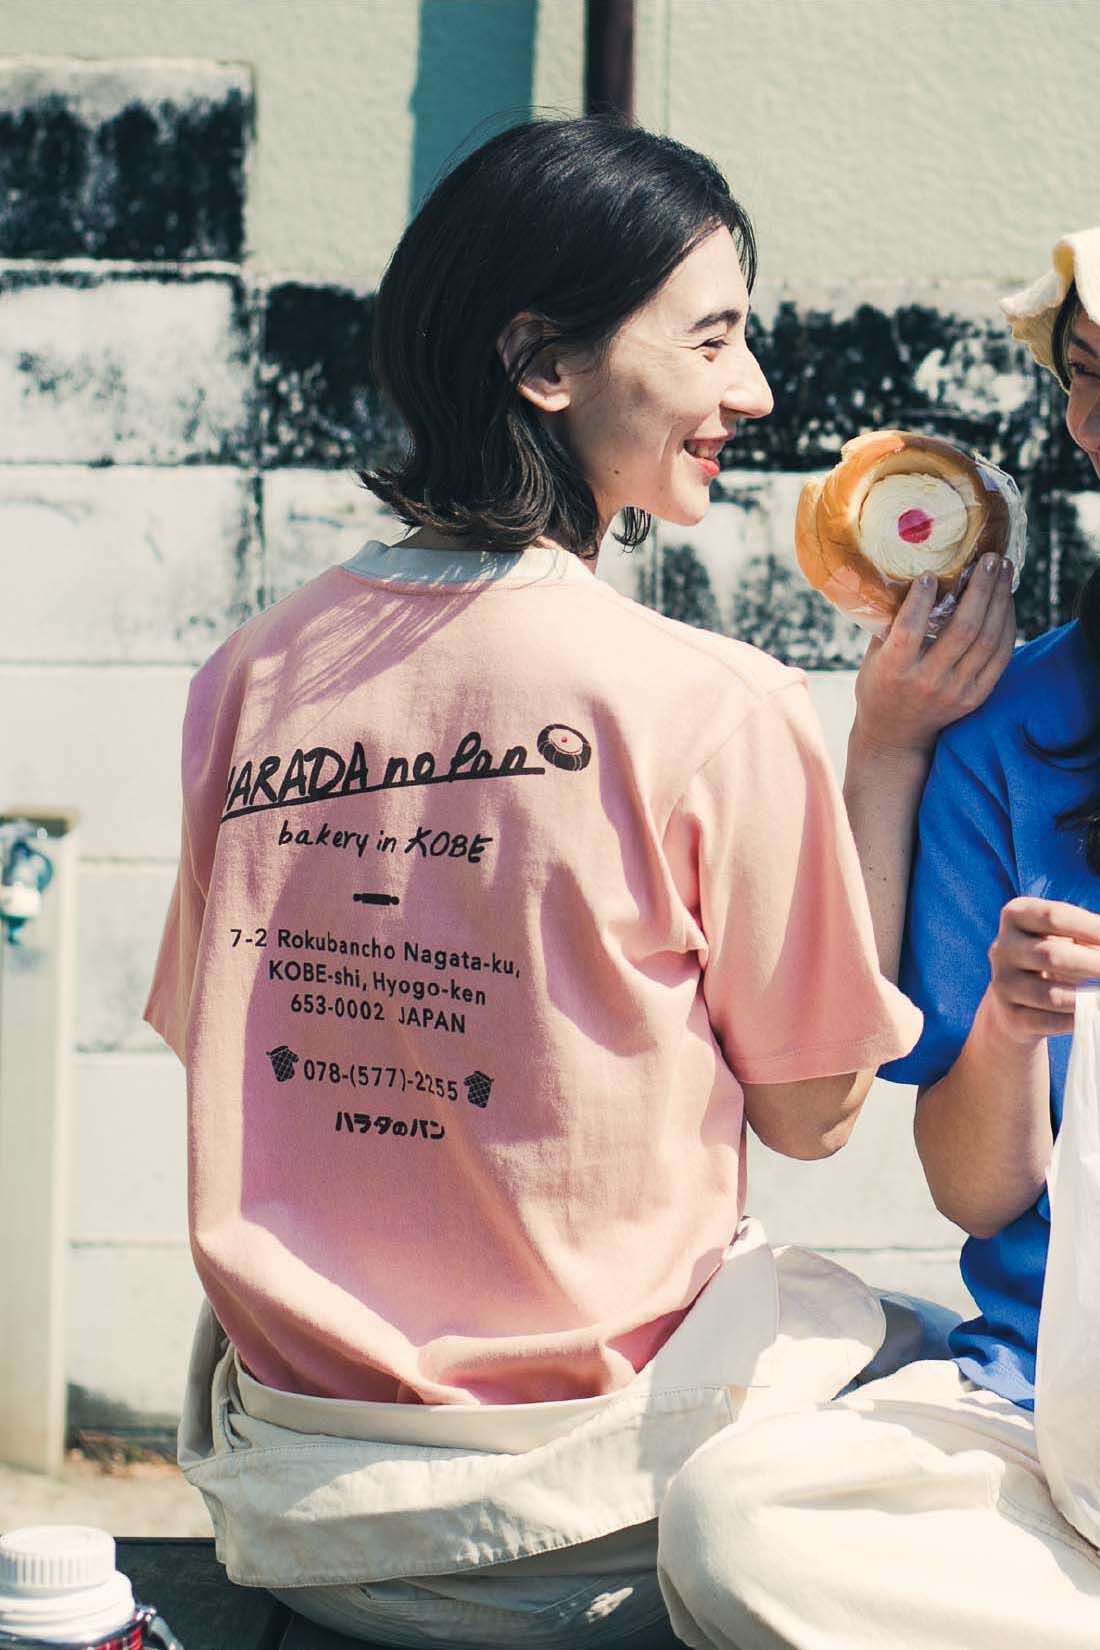 Live in  comfort|Live love cottonプロジェクト リブ イン コンフォート神戸のベーカリーハラダのパンさんとつくったオーガニックコットンのレトロかわいいTシャツ〈ベビーピンク〉